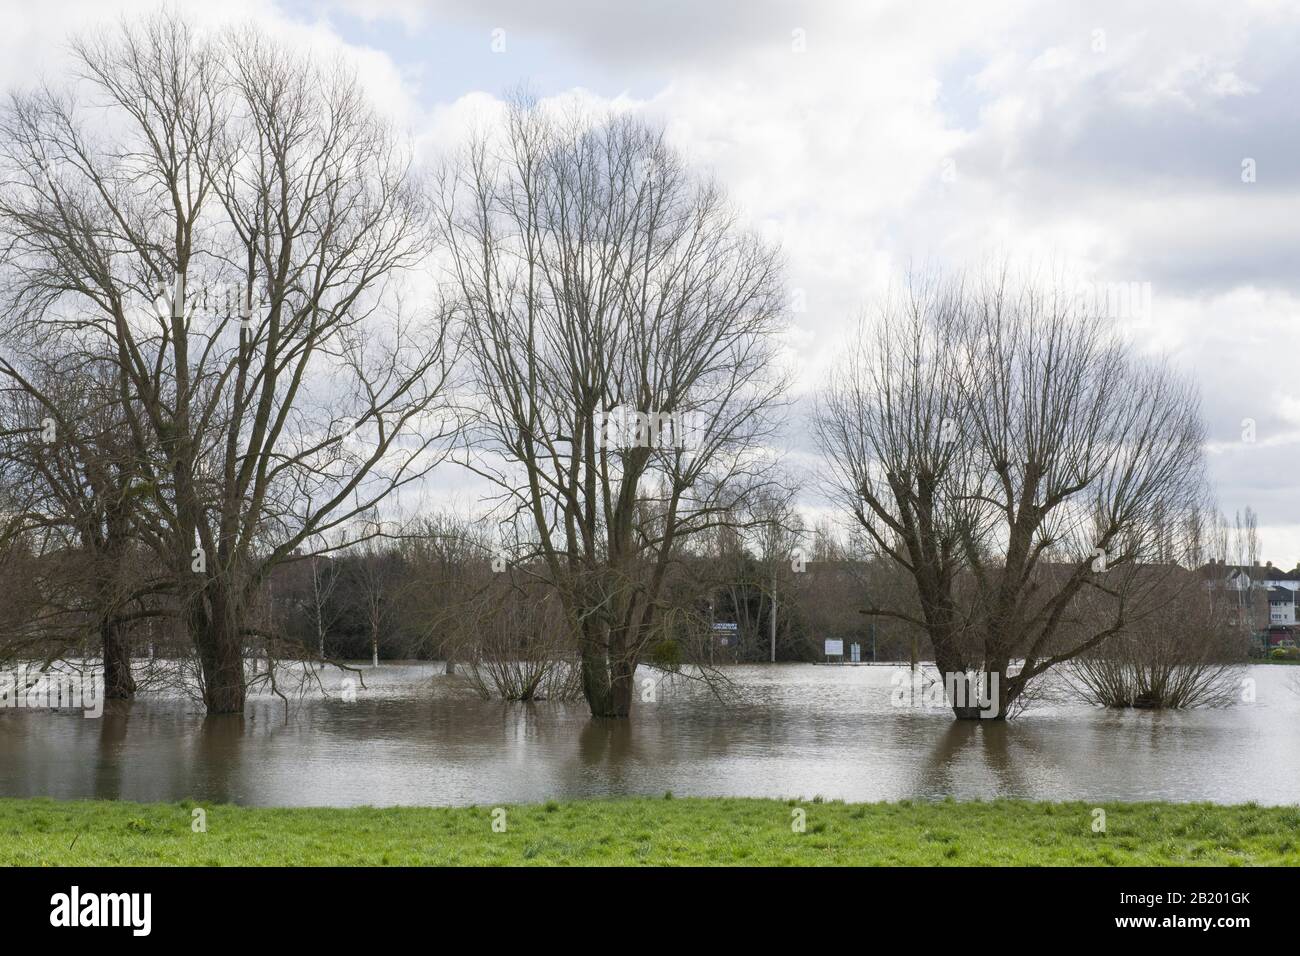 Überschwemmungen in Tewkesbury Gloucestershire, wo die Flüsse Severn und Avon aufeinandertreffen - Februar 2020 Stockfoto